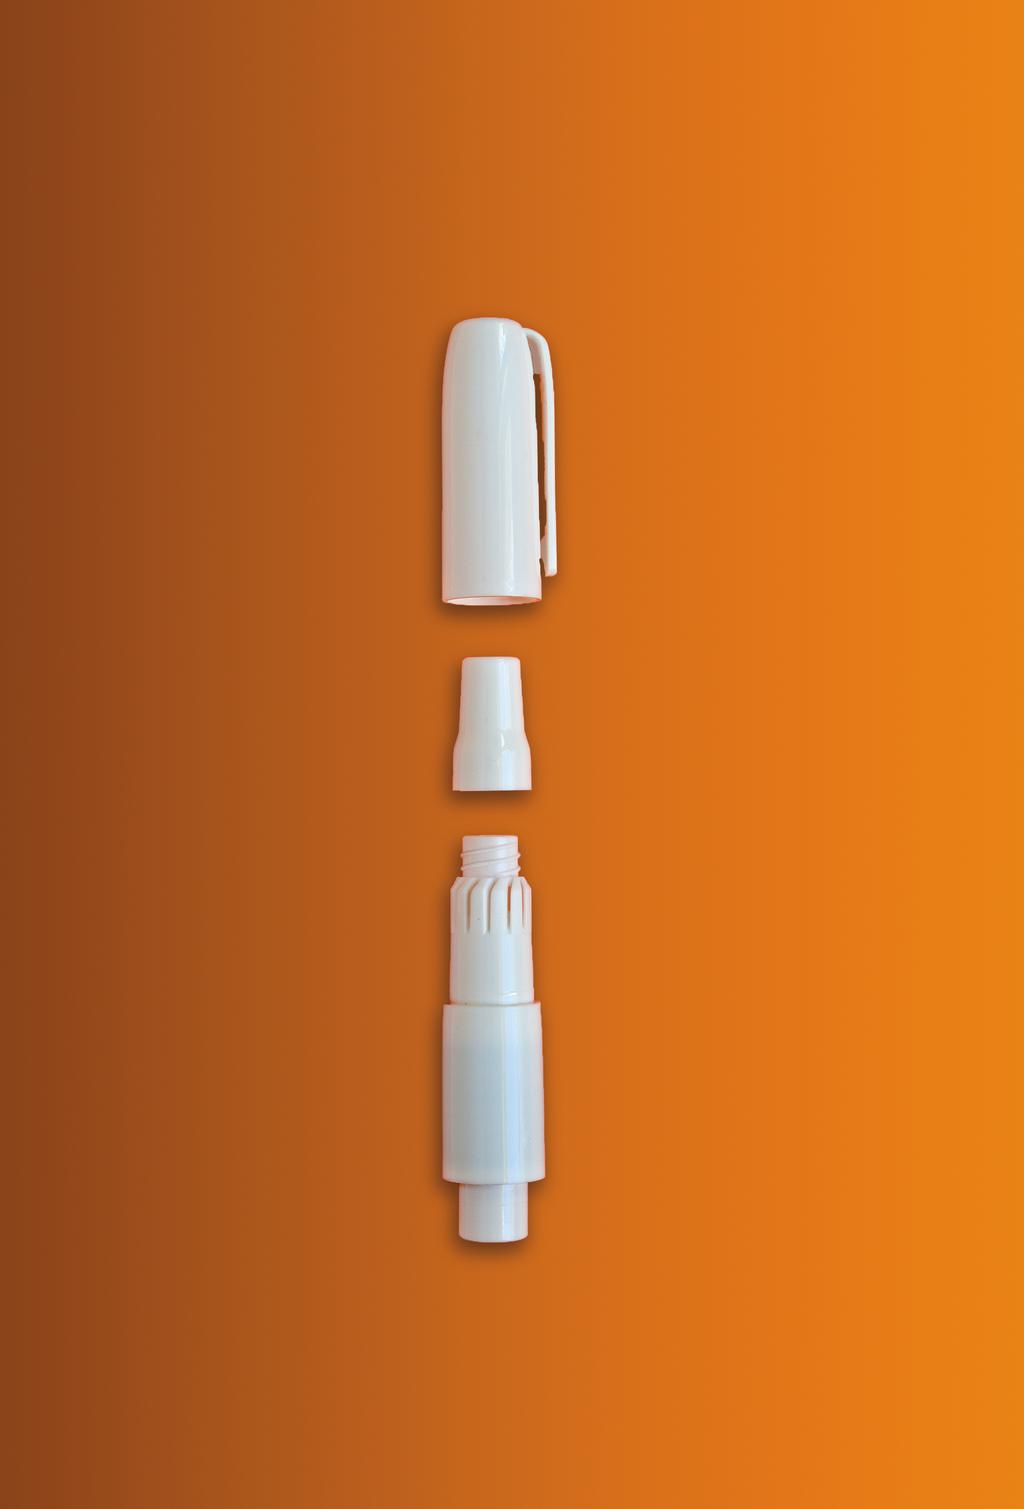 Über Colobreathe Der Turbospin -Inhalator Colobreathe besteht aus zwei Teilen der Kapsel, welche das Trocken pulver enthält, und dem Turbospin -Inhalator, mit dem sichergestellt wird, dass der